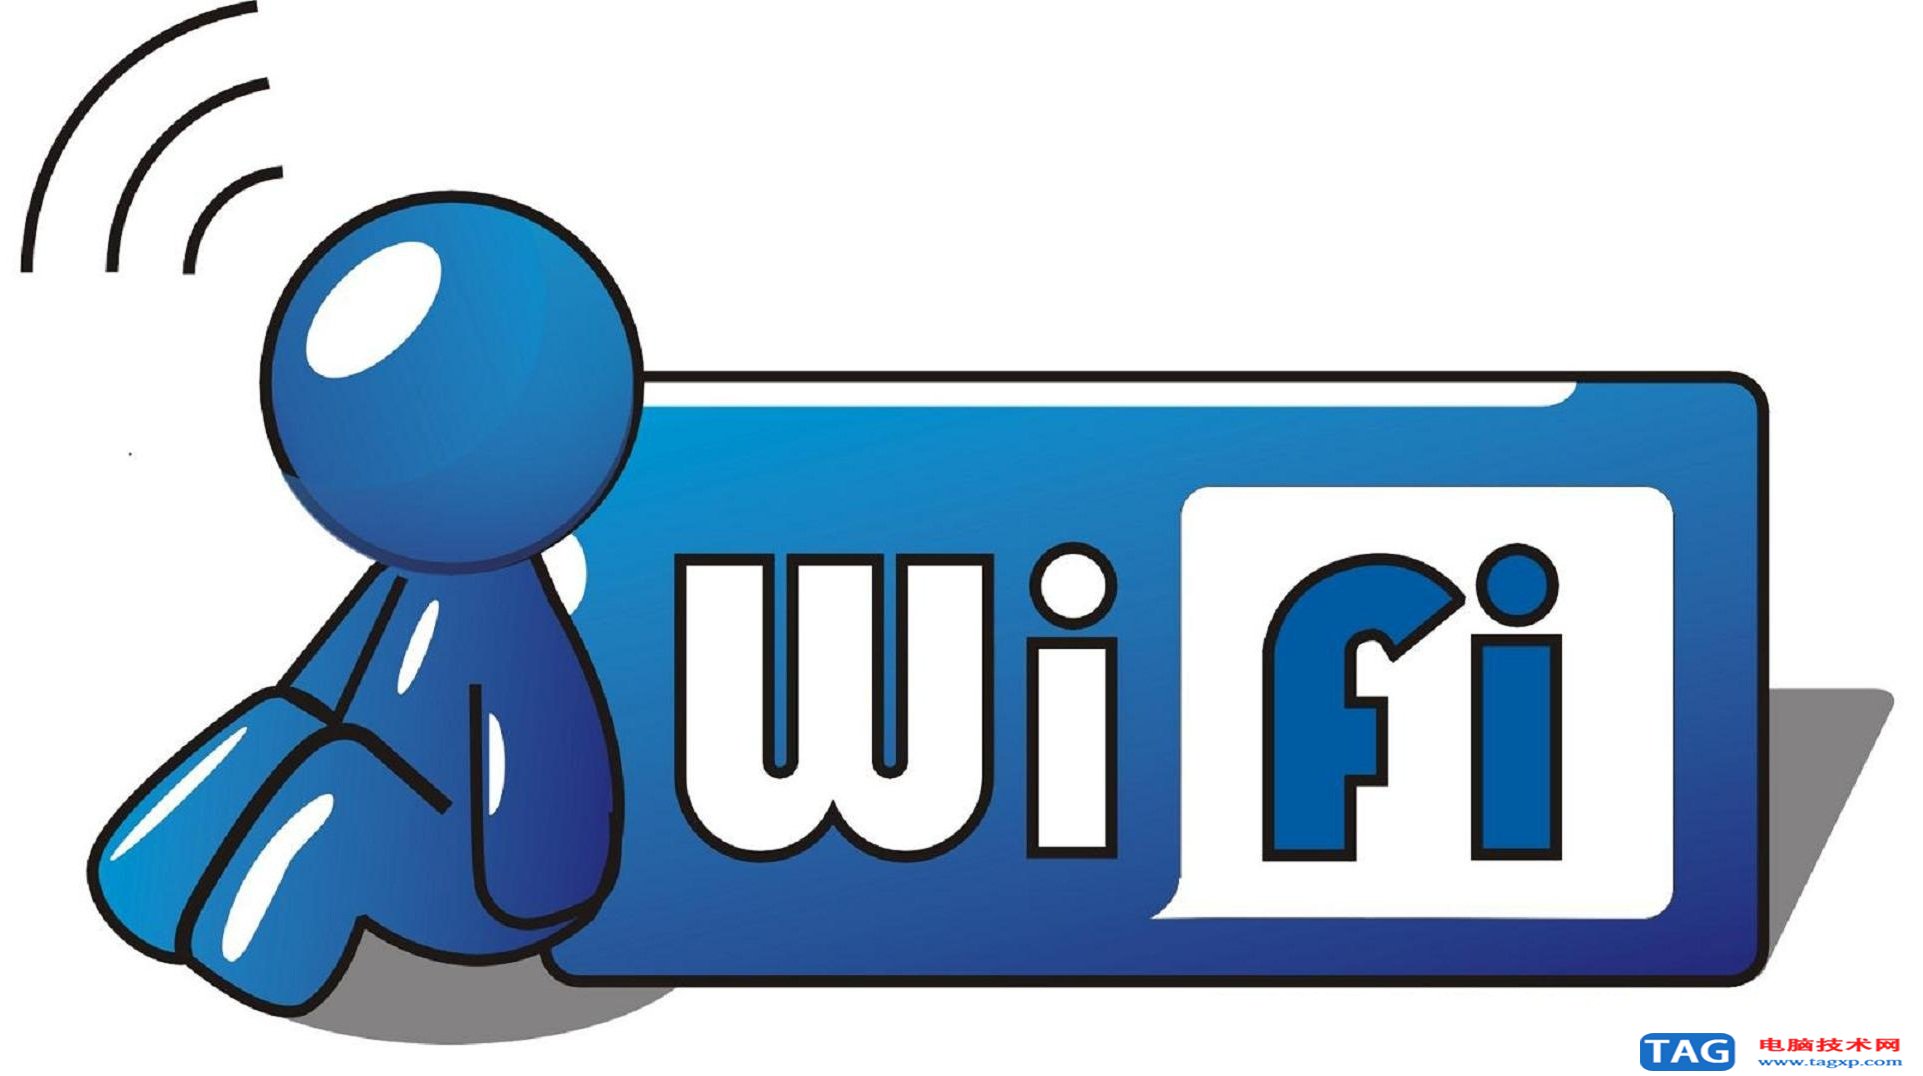 更新wi - fi的速度